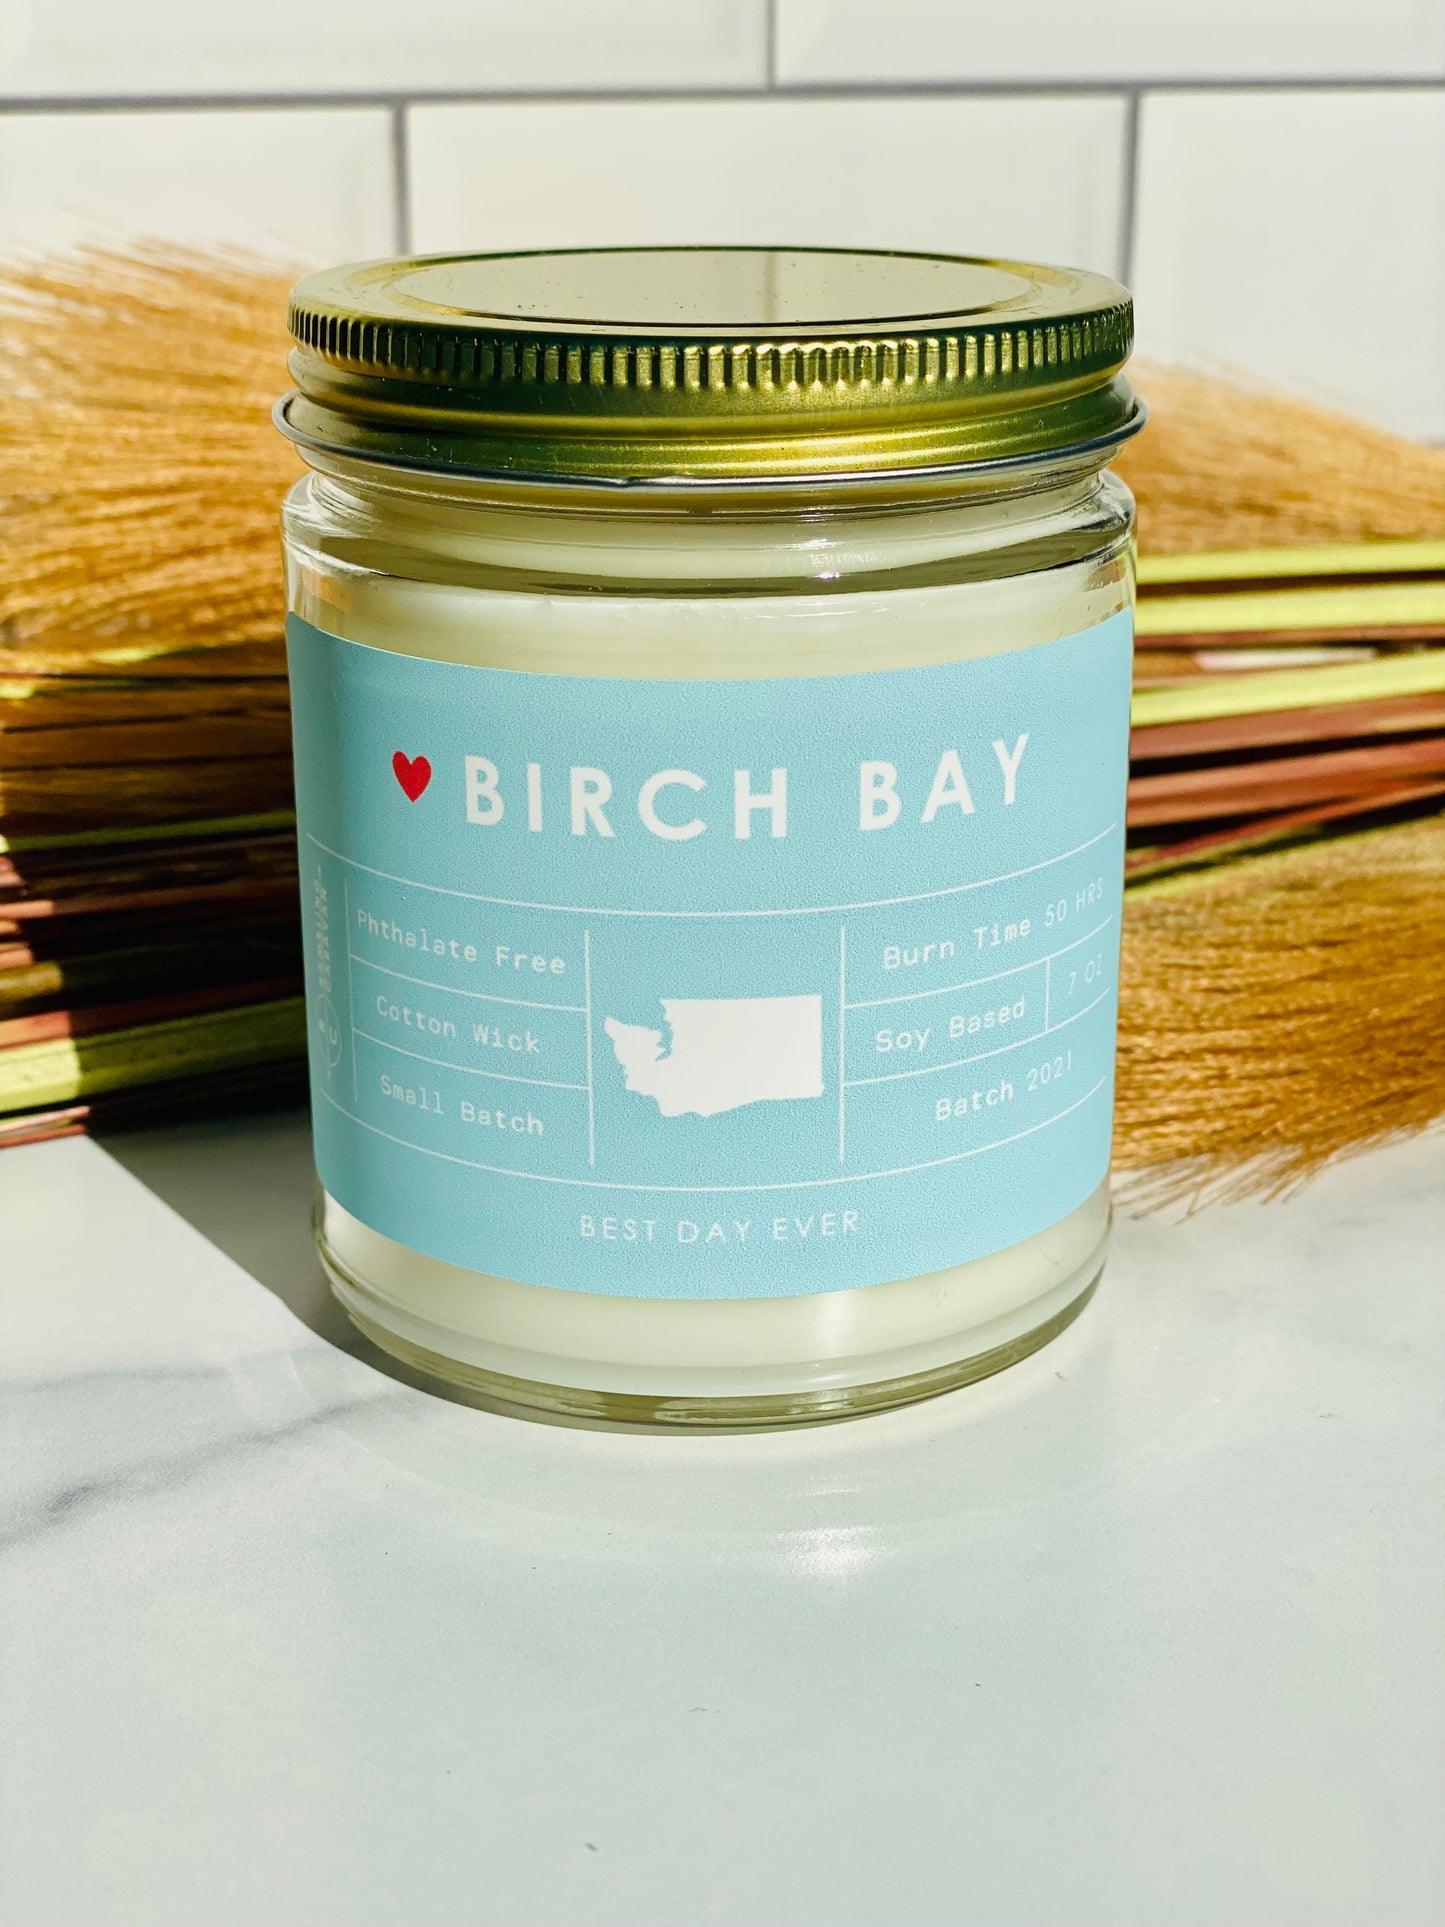 Birch Bay, WA Candle